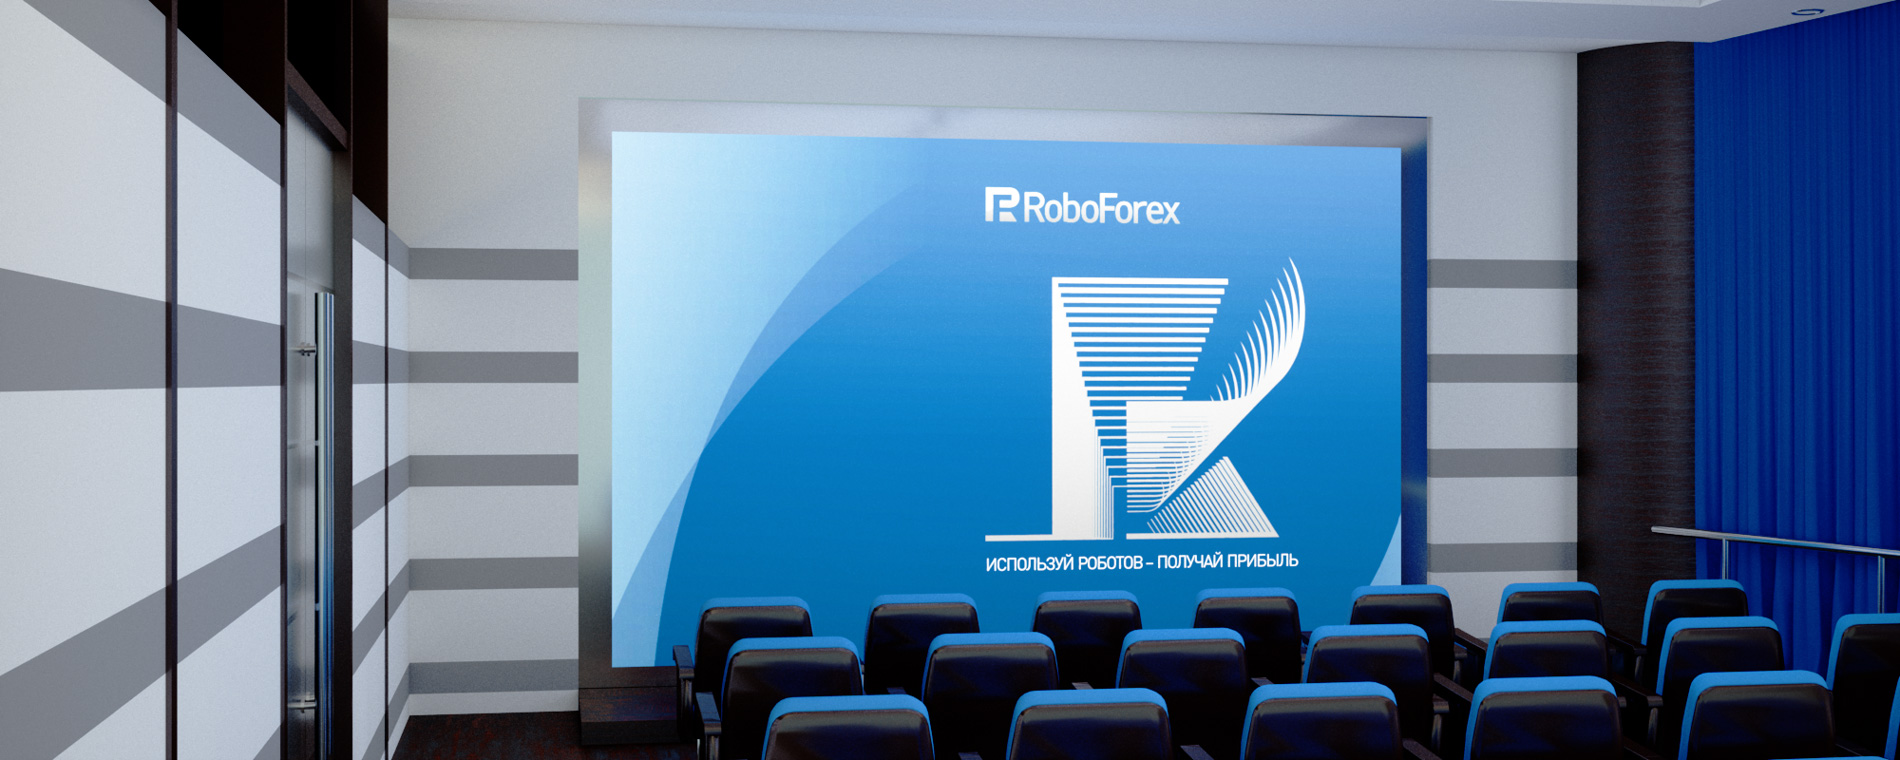 Создание фирменного стиля и логотипа для международного форекс-брокера RoboForex